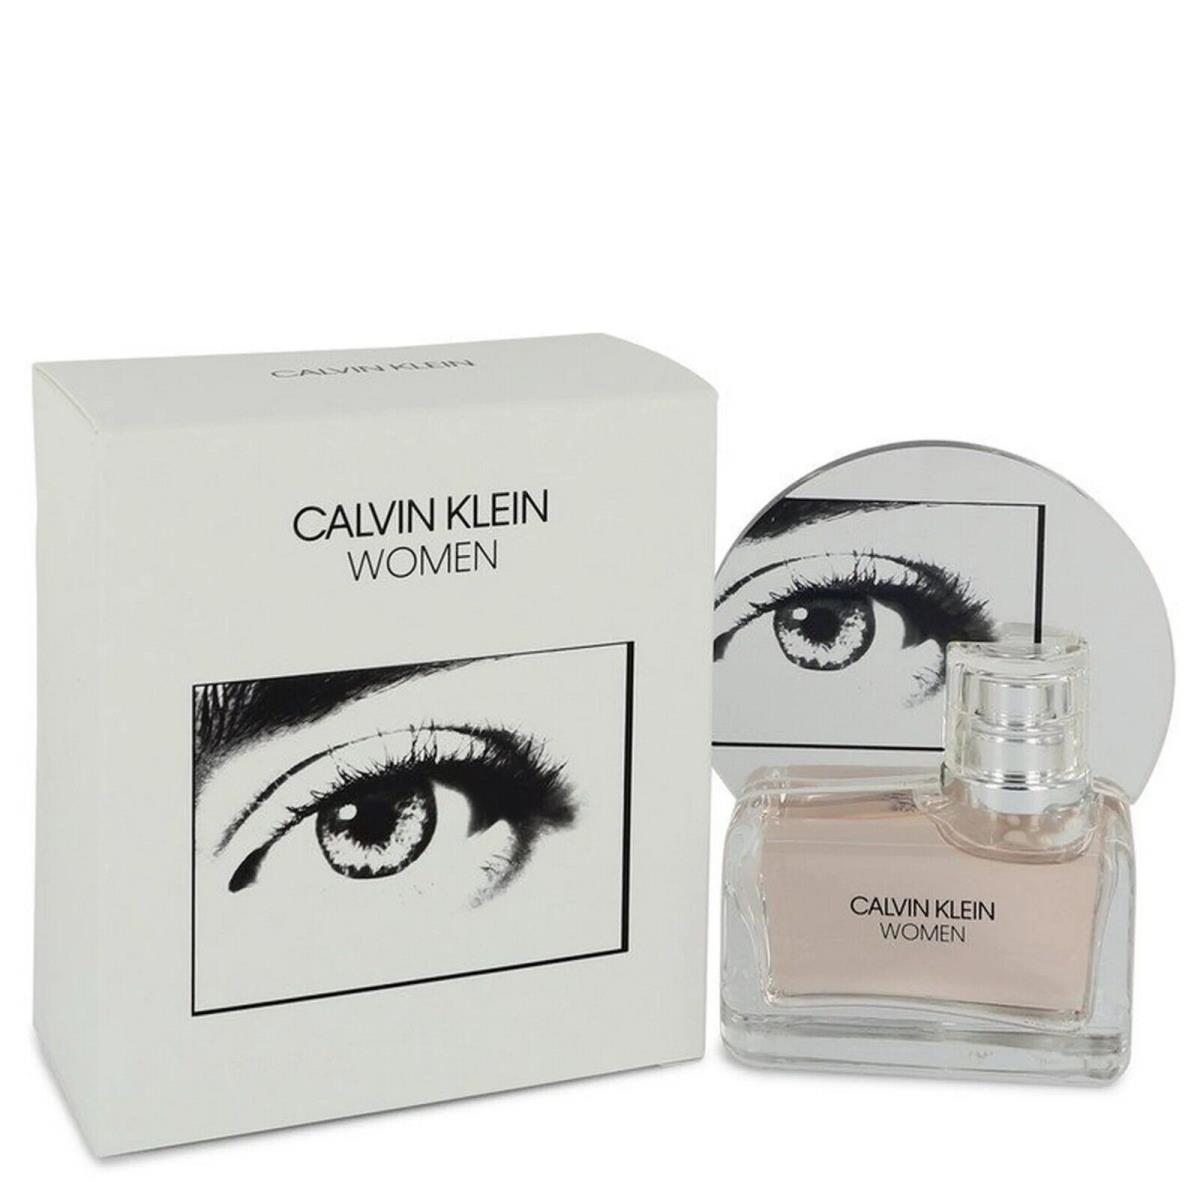 Calvin Klein Women Eau de Parfum 1.7 oz 50 ml Women Perfume Seald